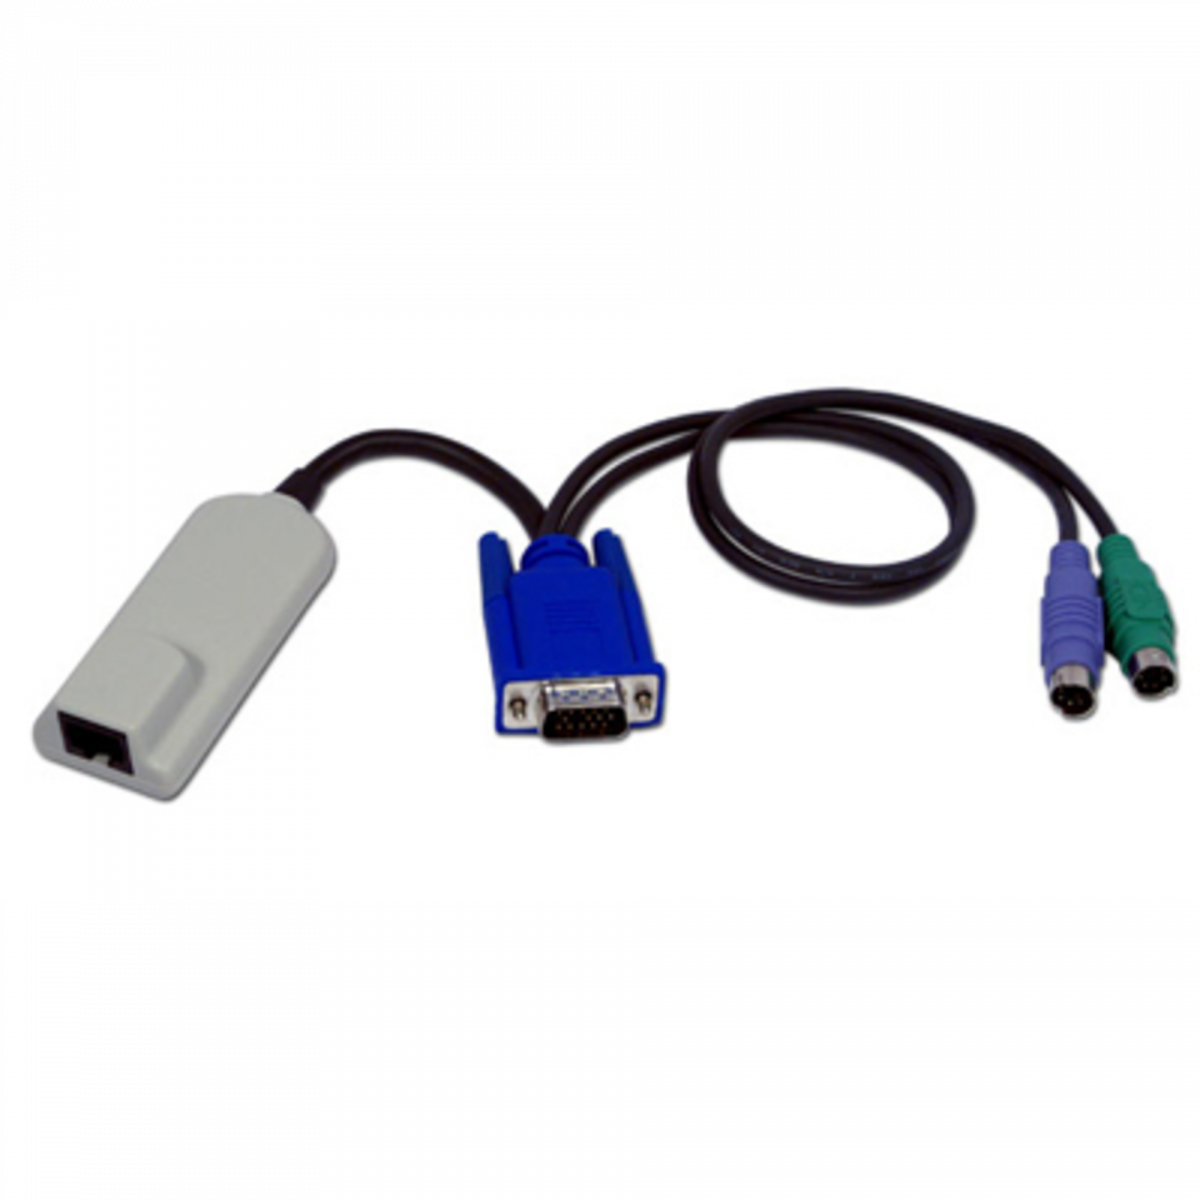 Адаптер для подключения серверов к KVM Avocent, с PS2 клавиатурой, мышью и VGA монитором